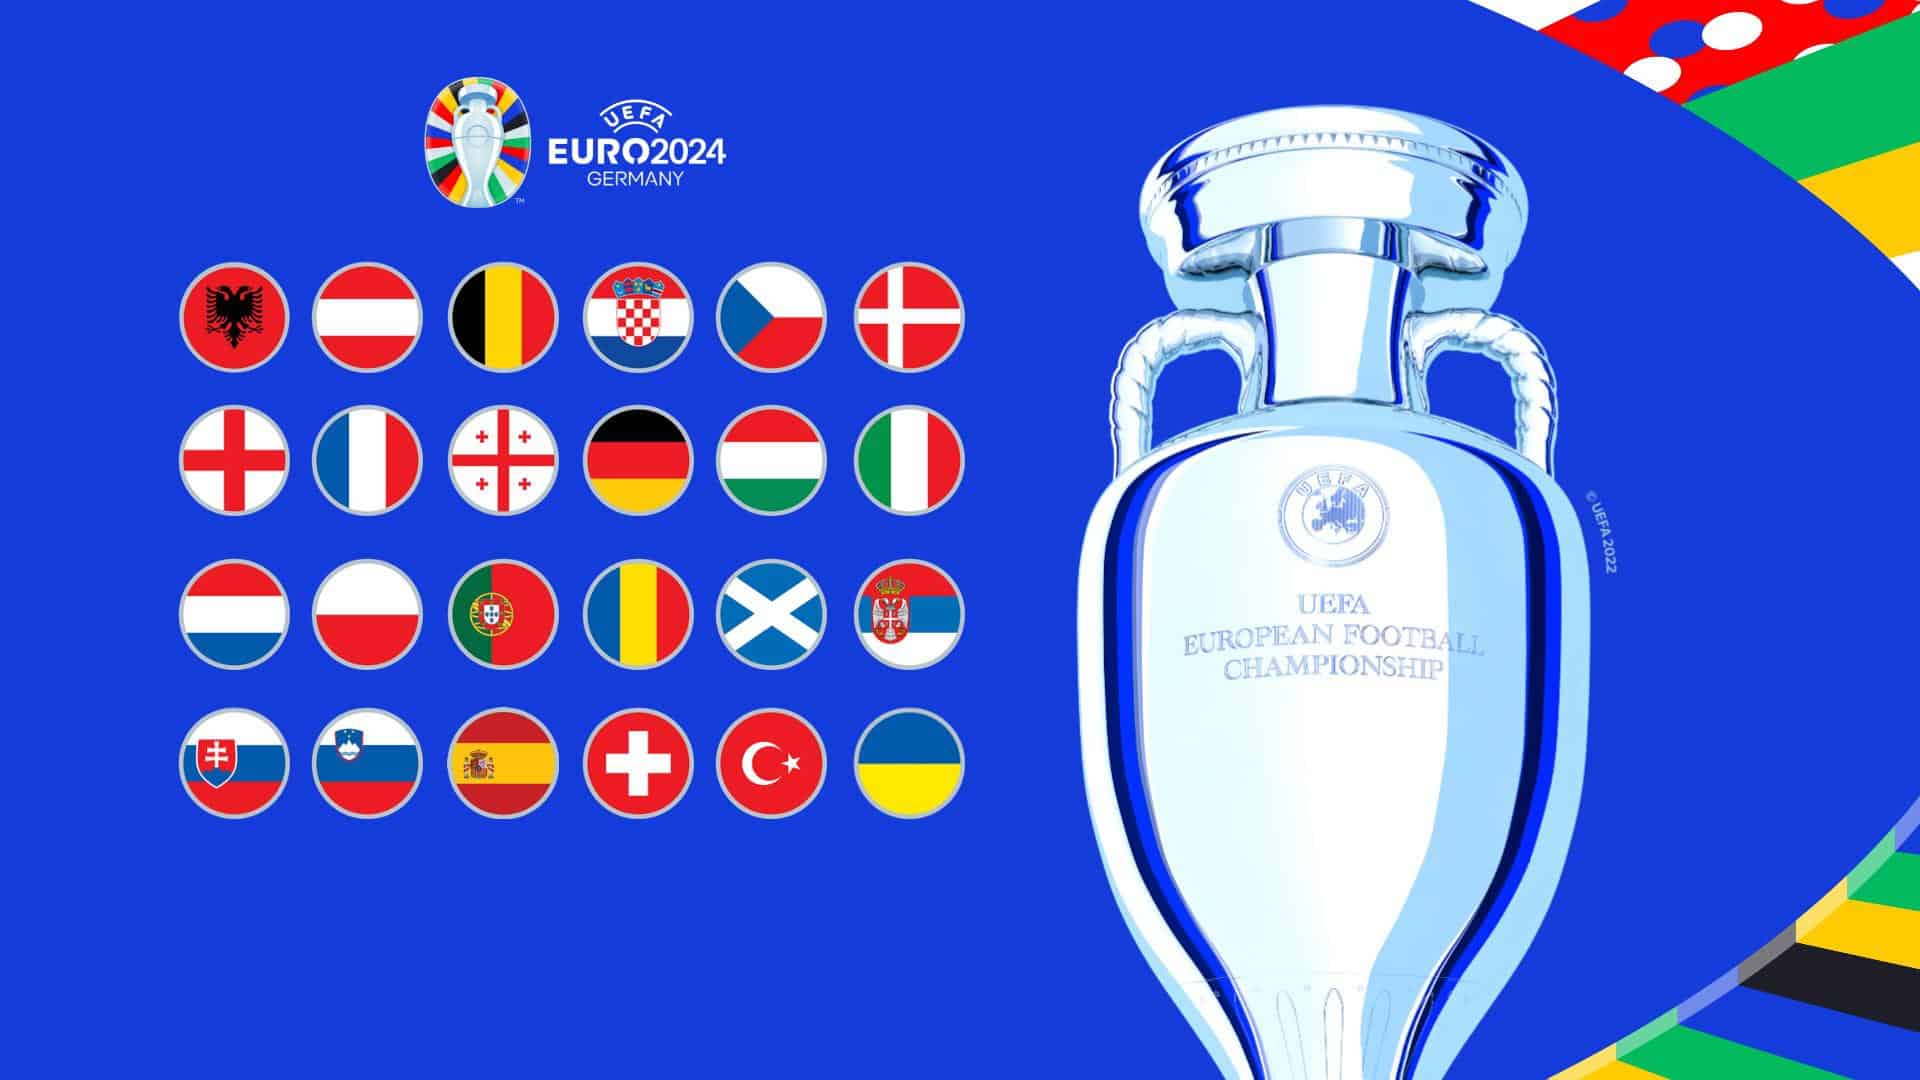 Billede fra UEFA.com.